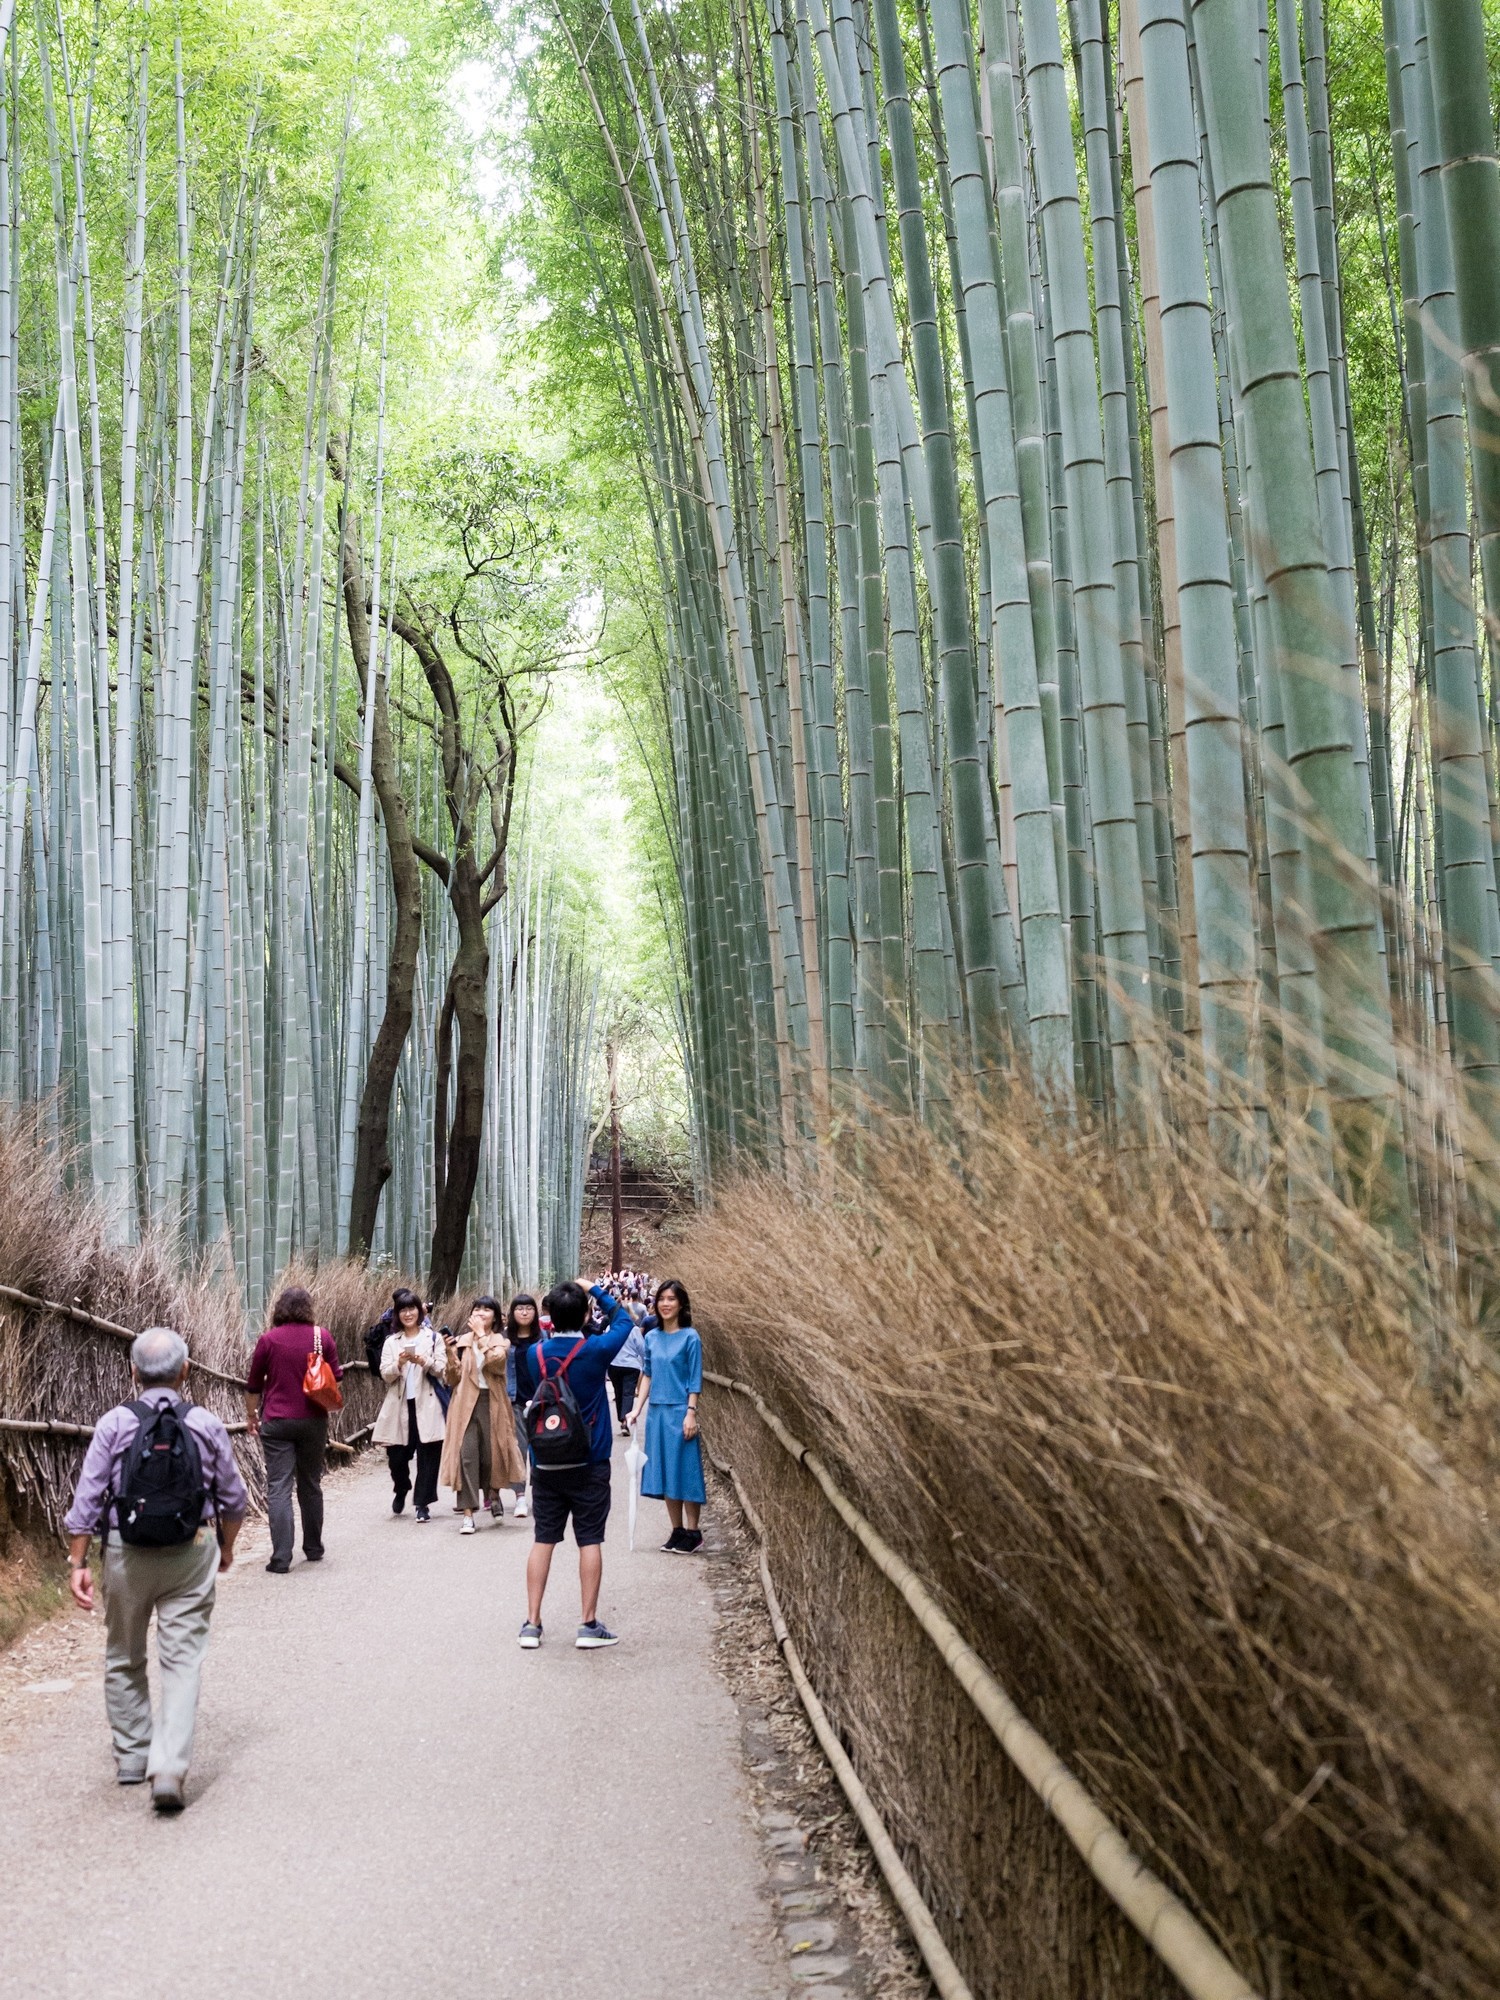 Zugang im Bambuswald von Kyoto